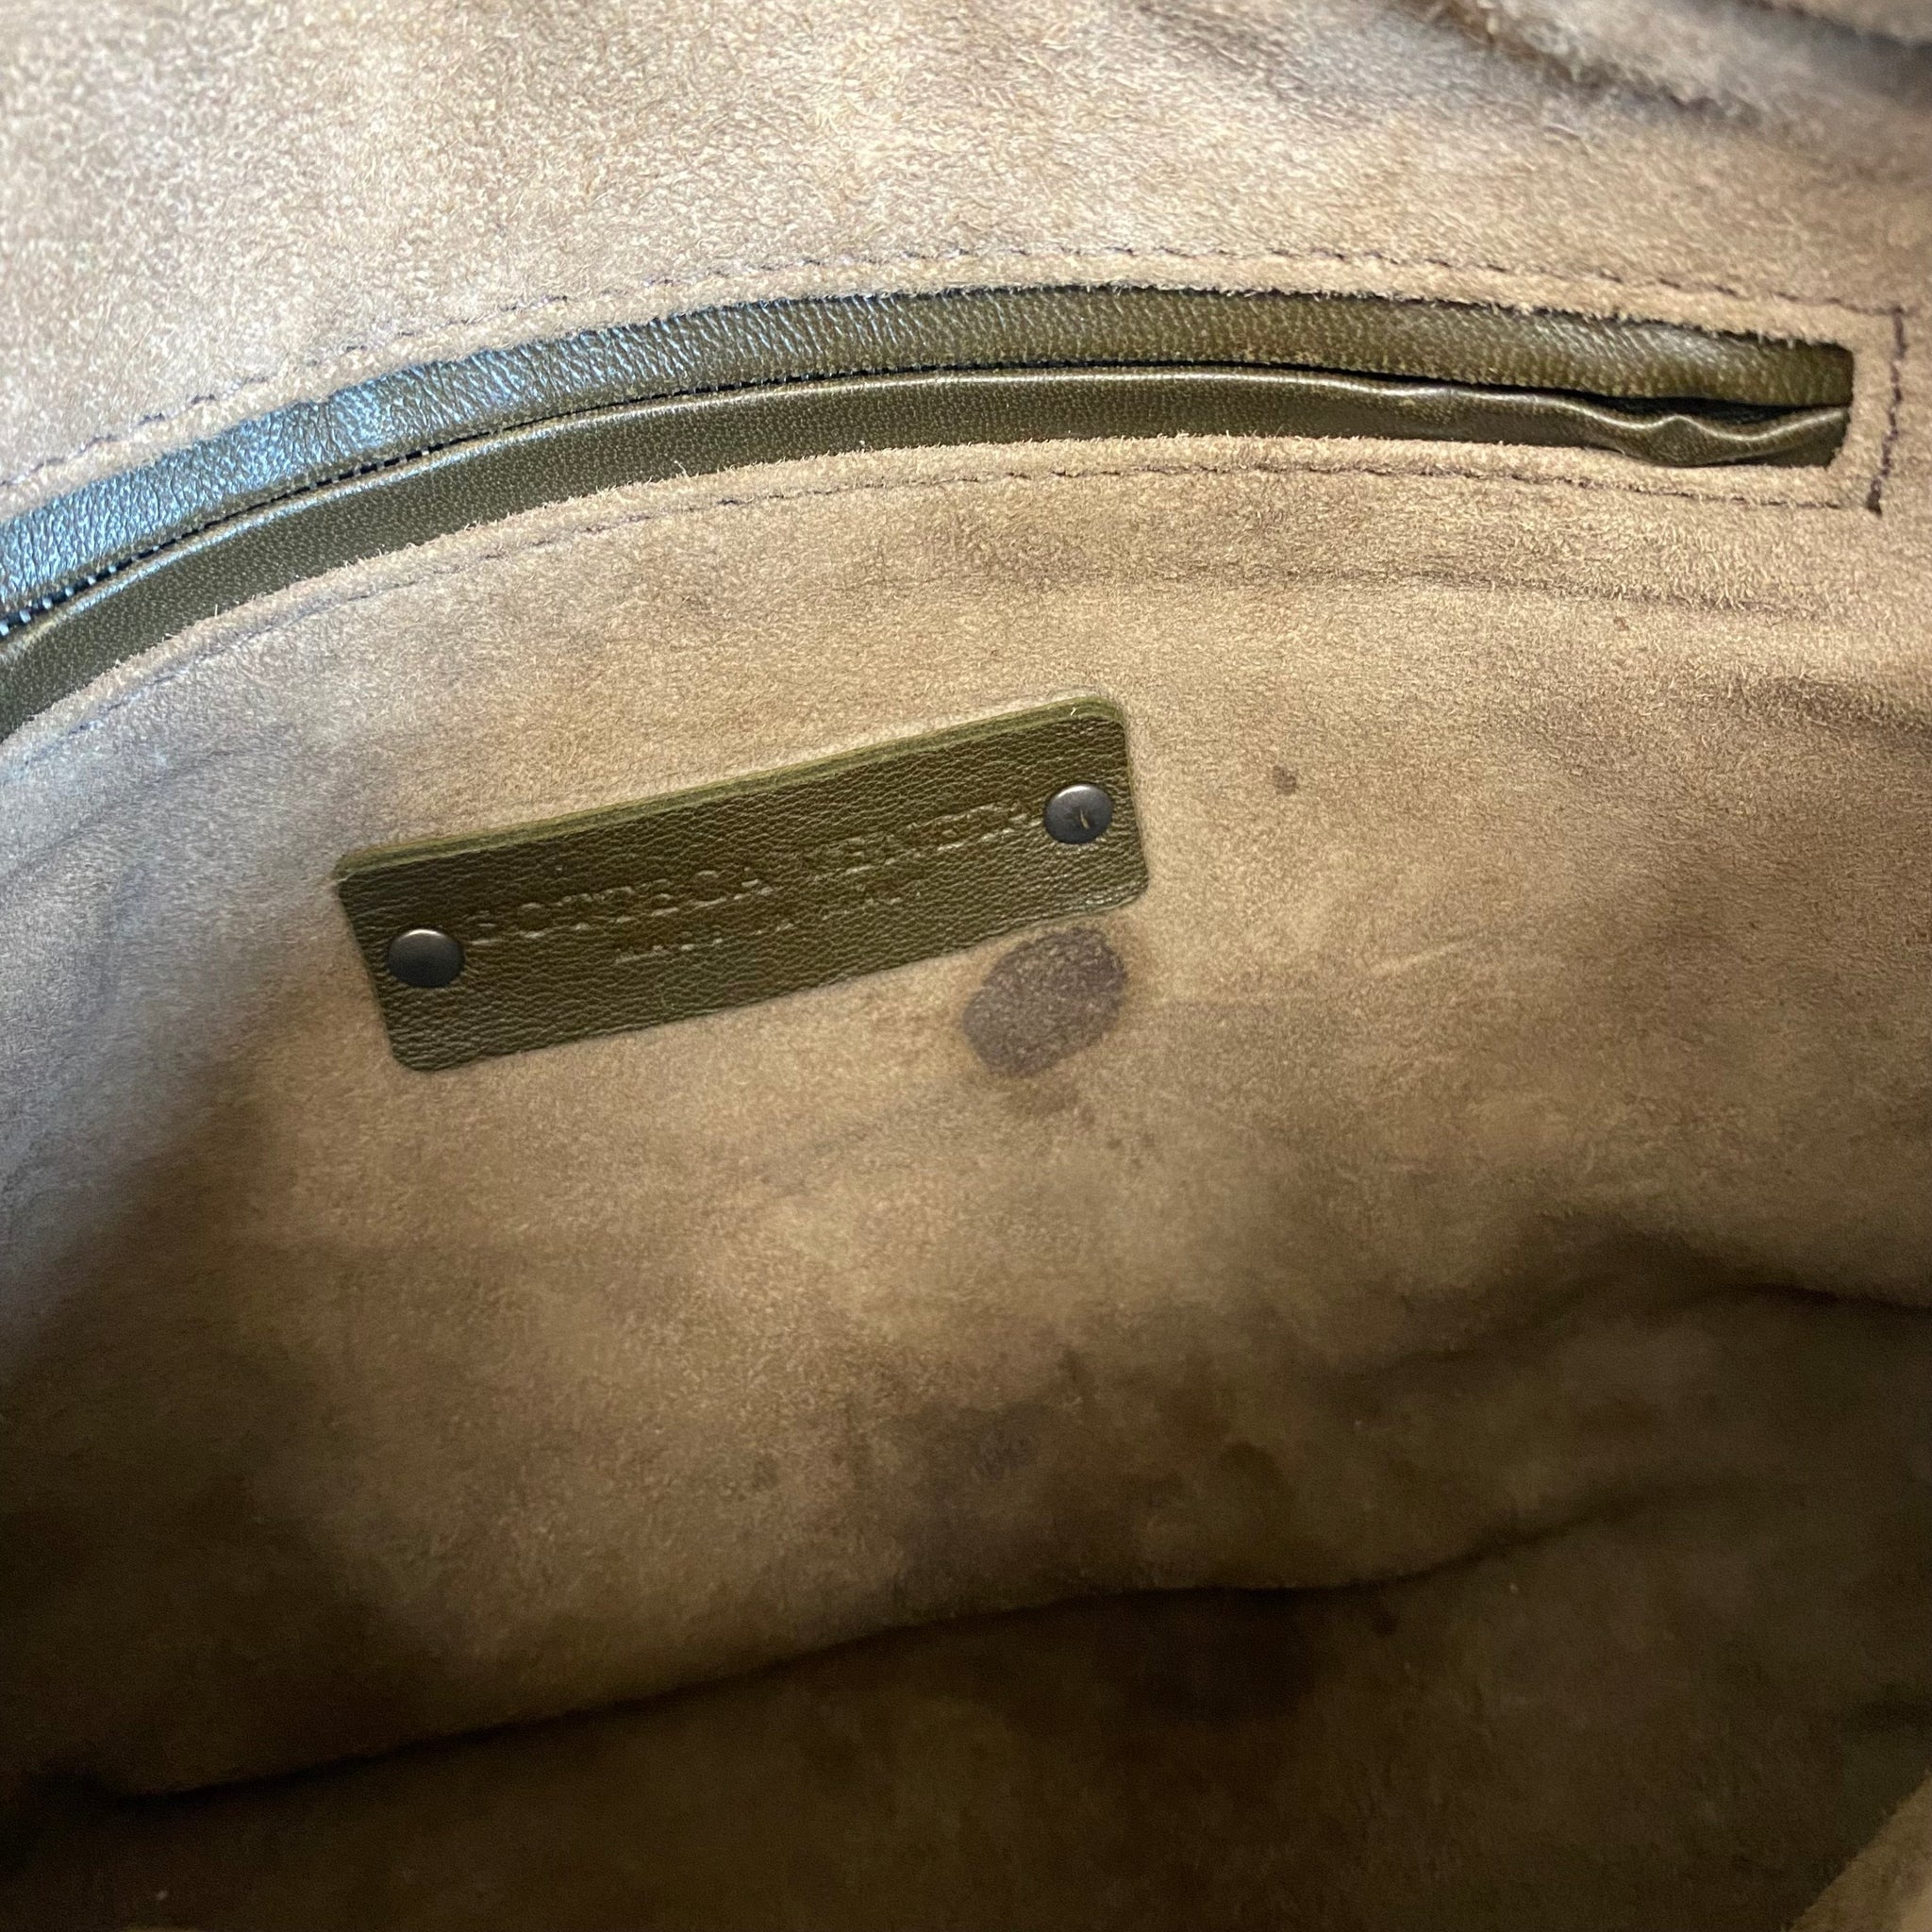 Bottega Veneta Nodini Crossbody Bag – Bagaholic